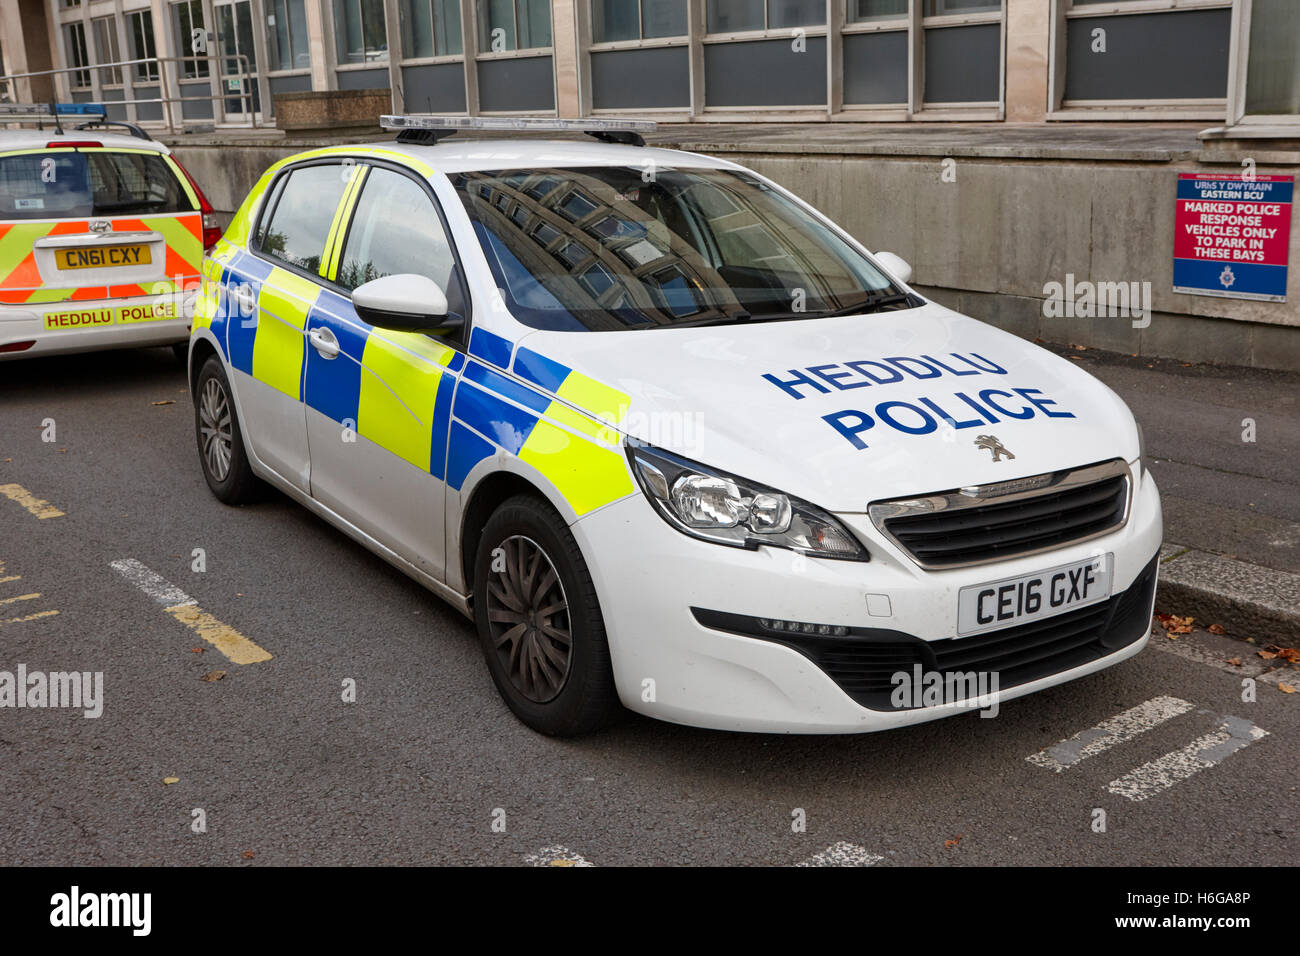 Galles del sud di polizia bilingue heddlu Peugeot 308 veicolo livrea Galles Cardiff Regno Unito Foto Stock